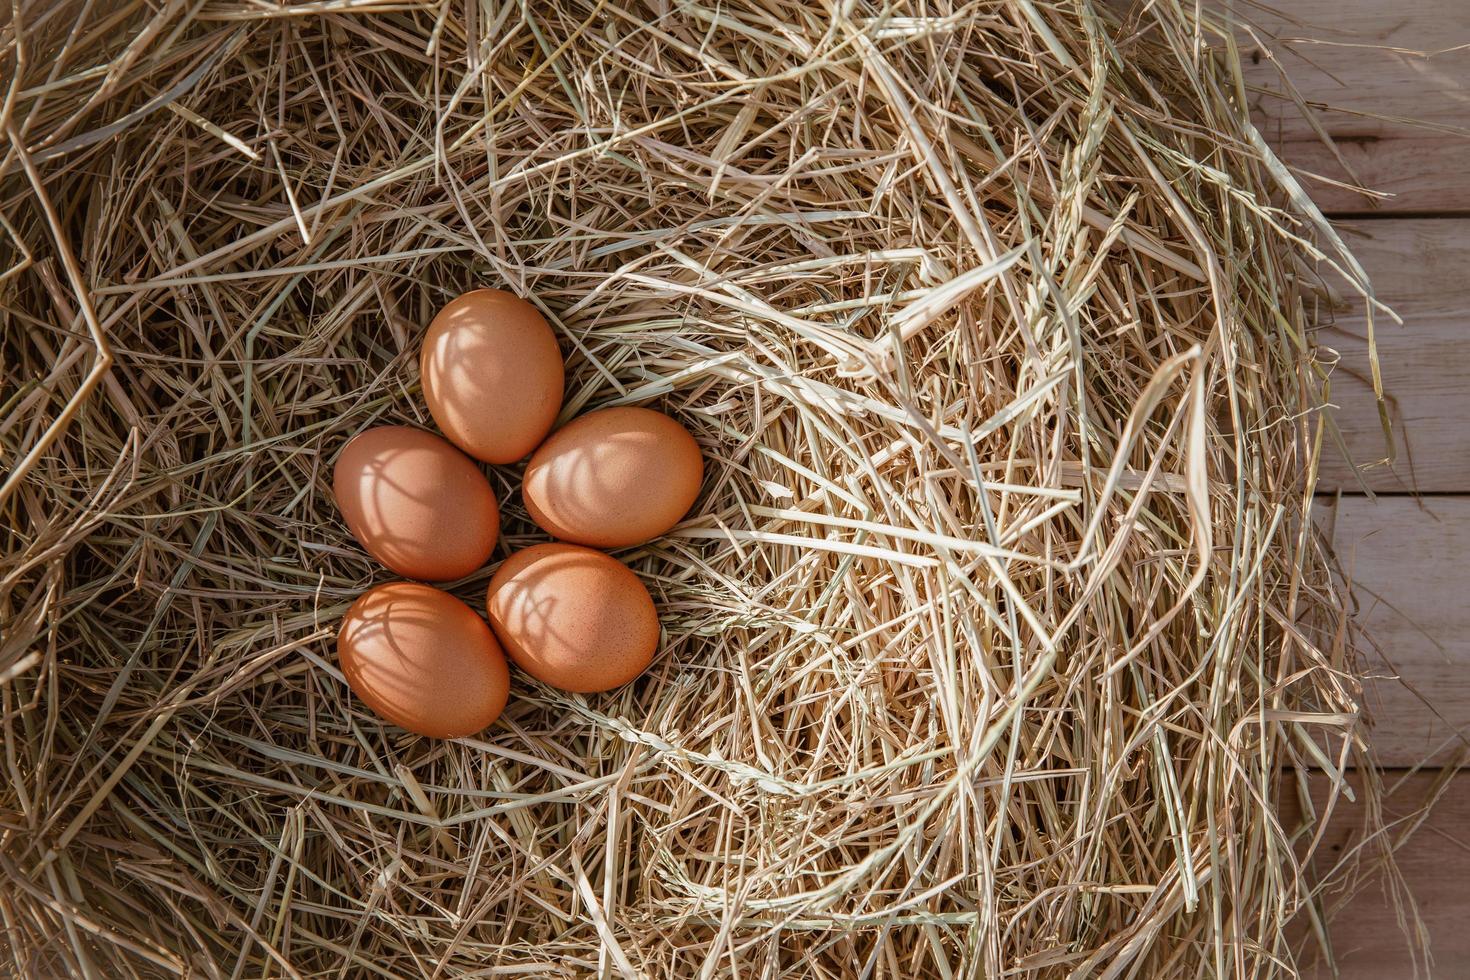 uova di gallina in un nido di pollo su paglia di riso foto